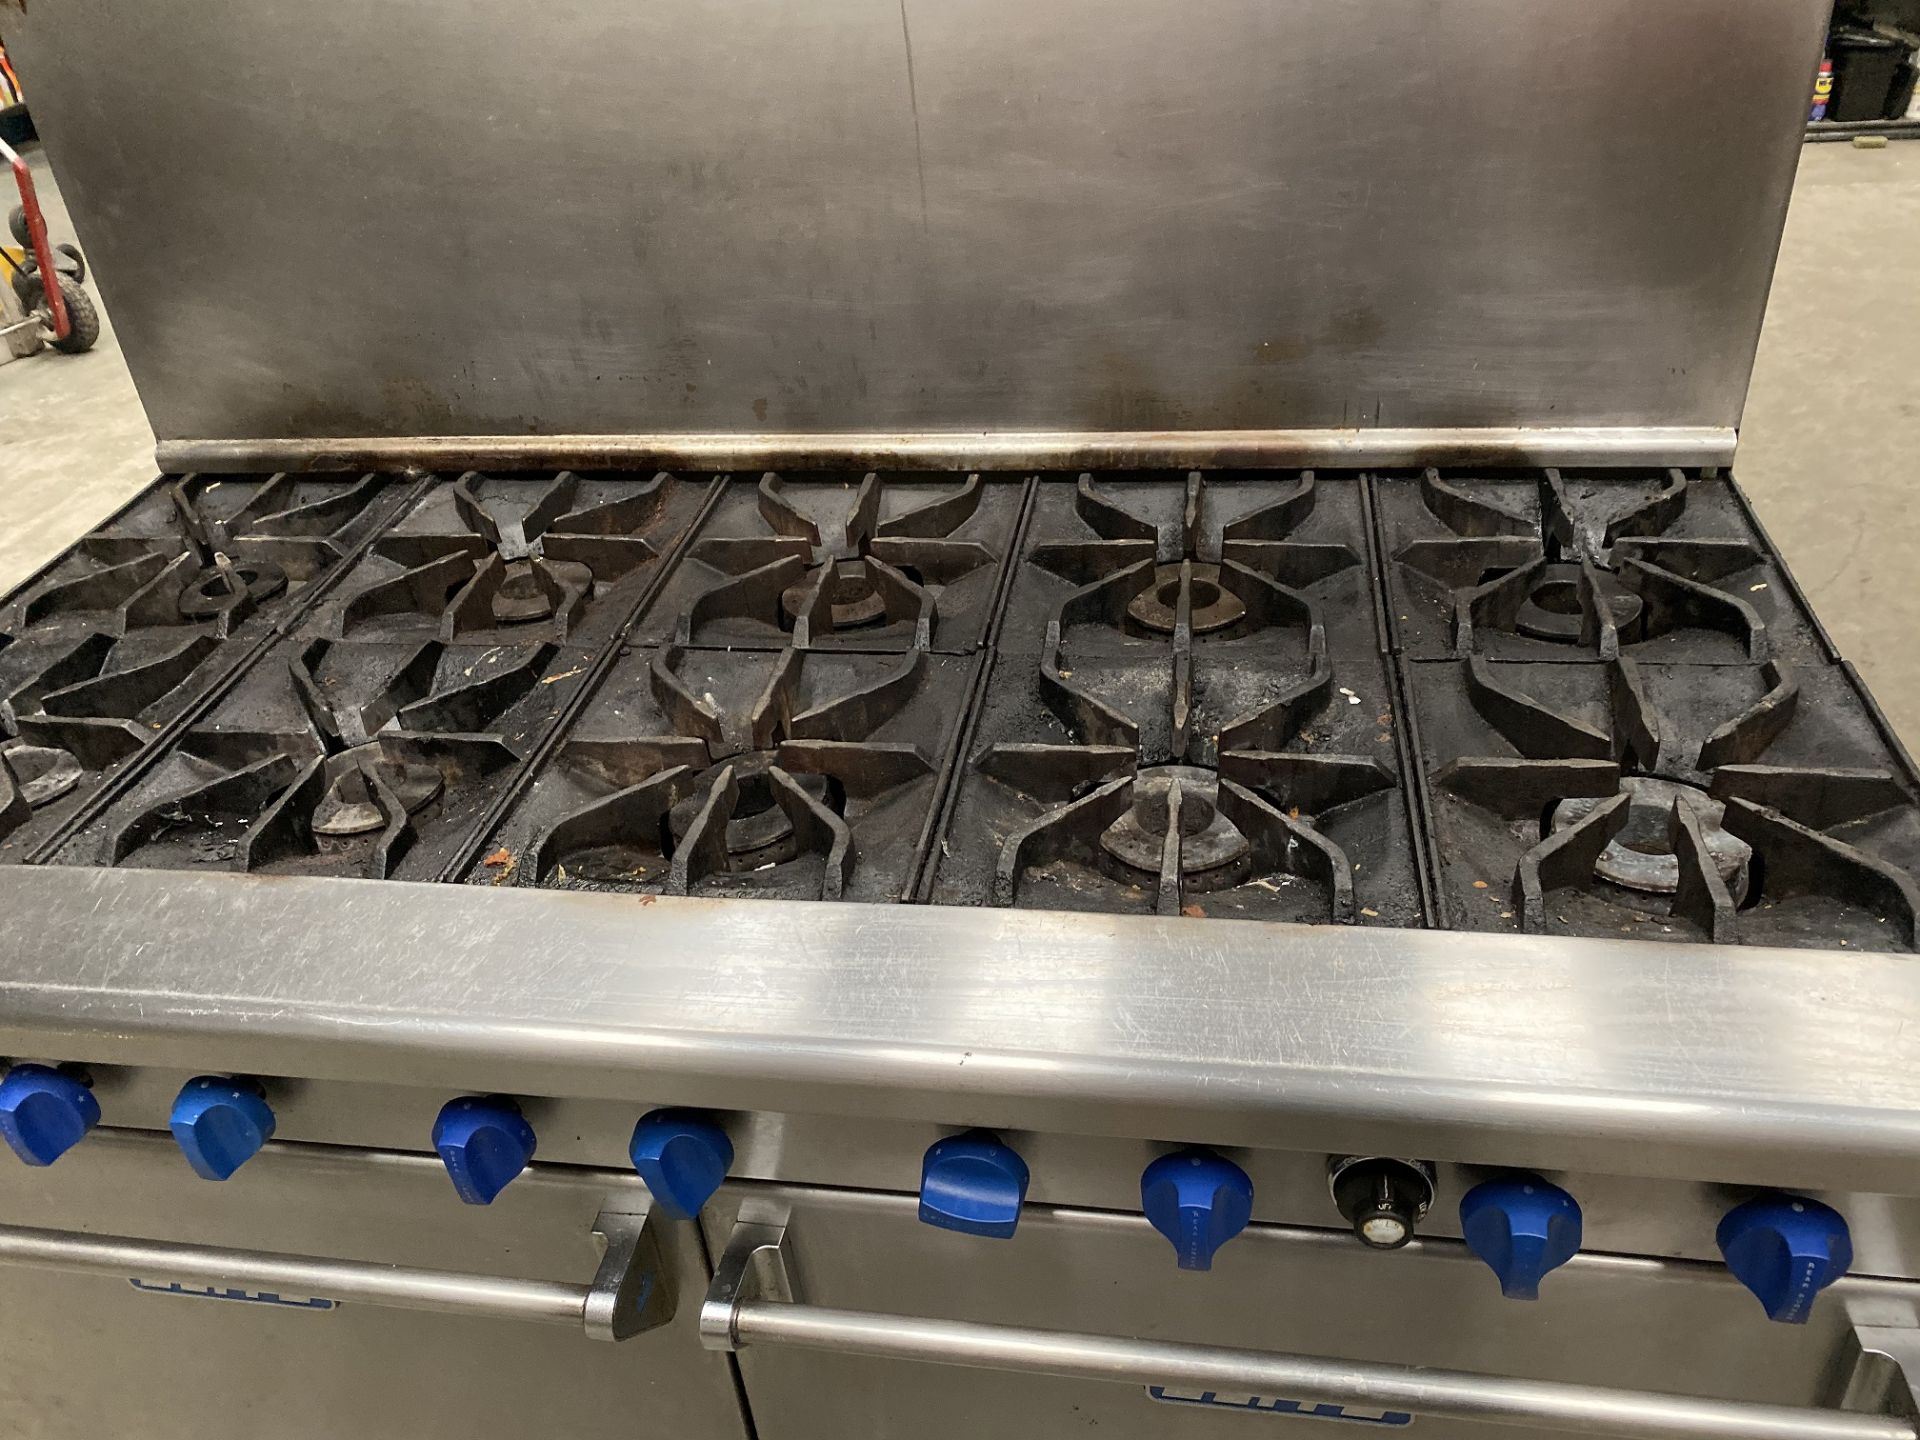 Elite 10 Burner Cooking Range with 2 Large Ovens - Image 2 of 3